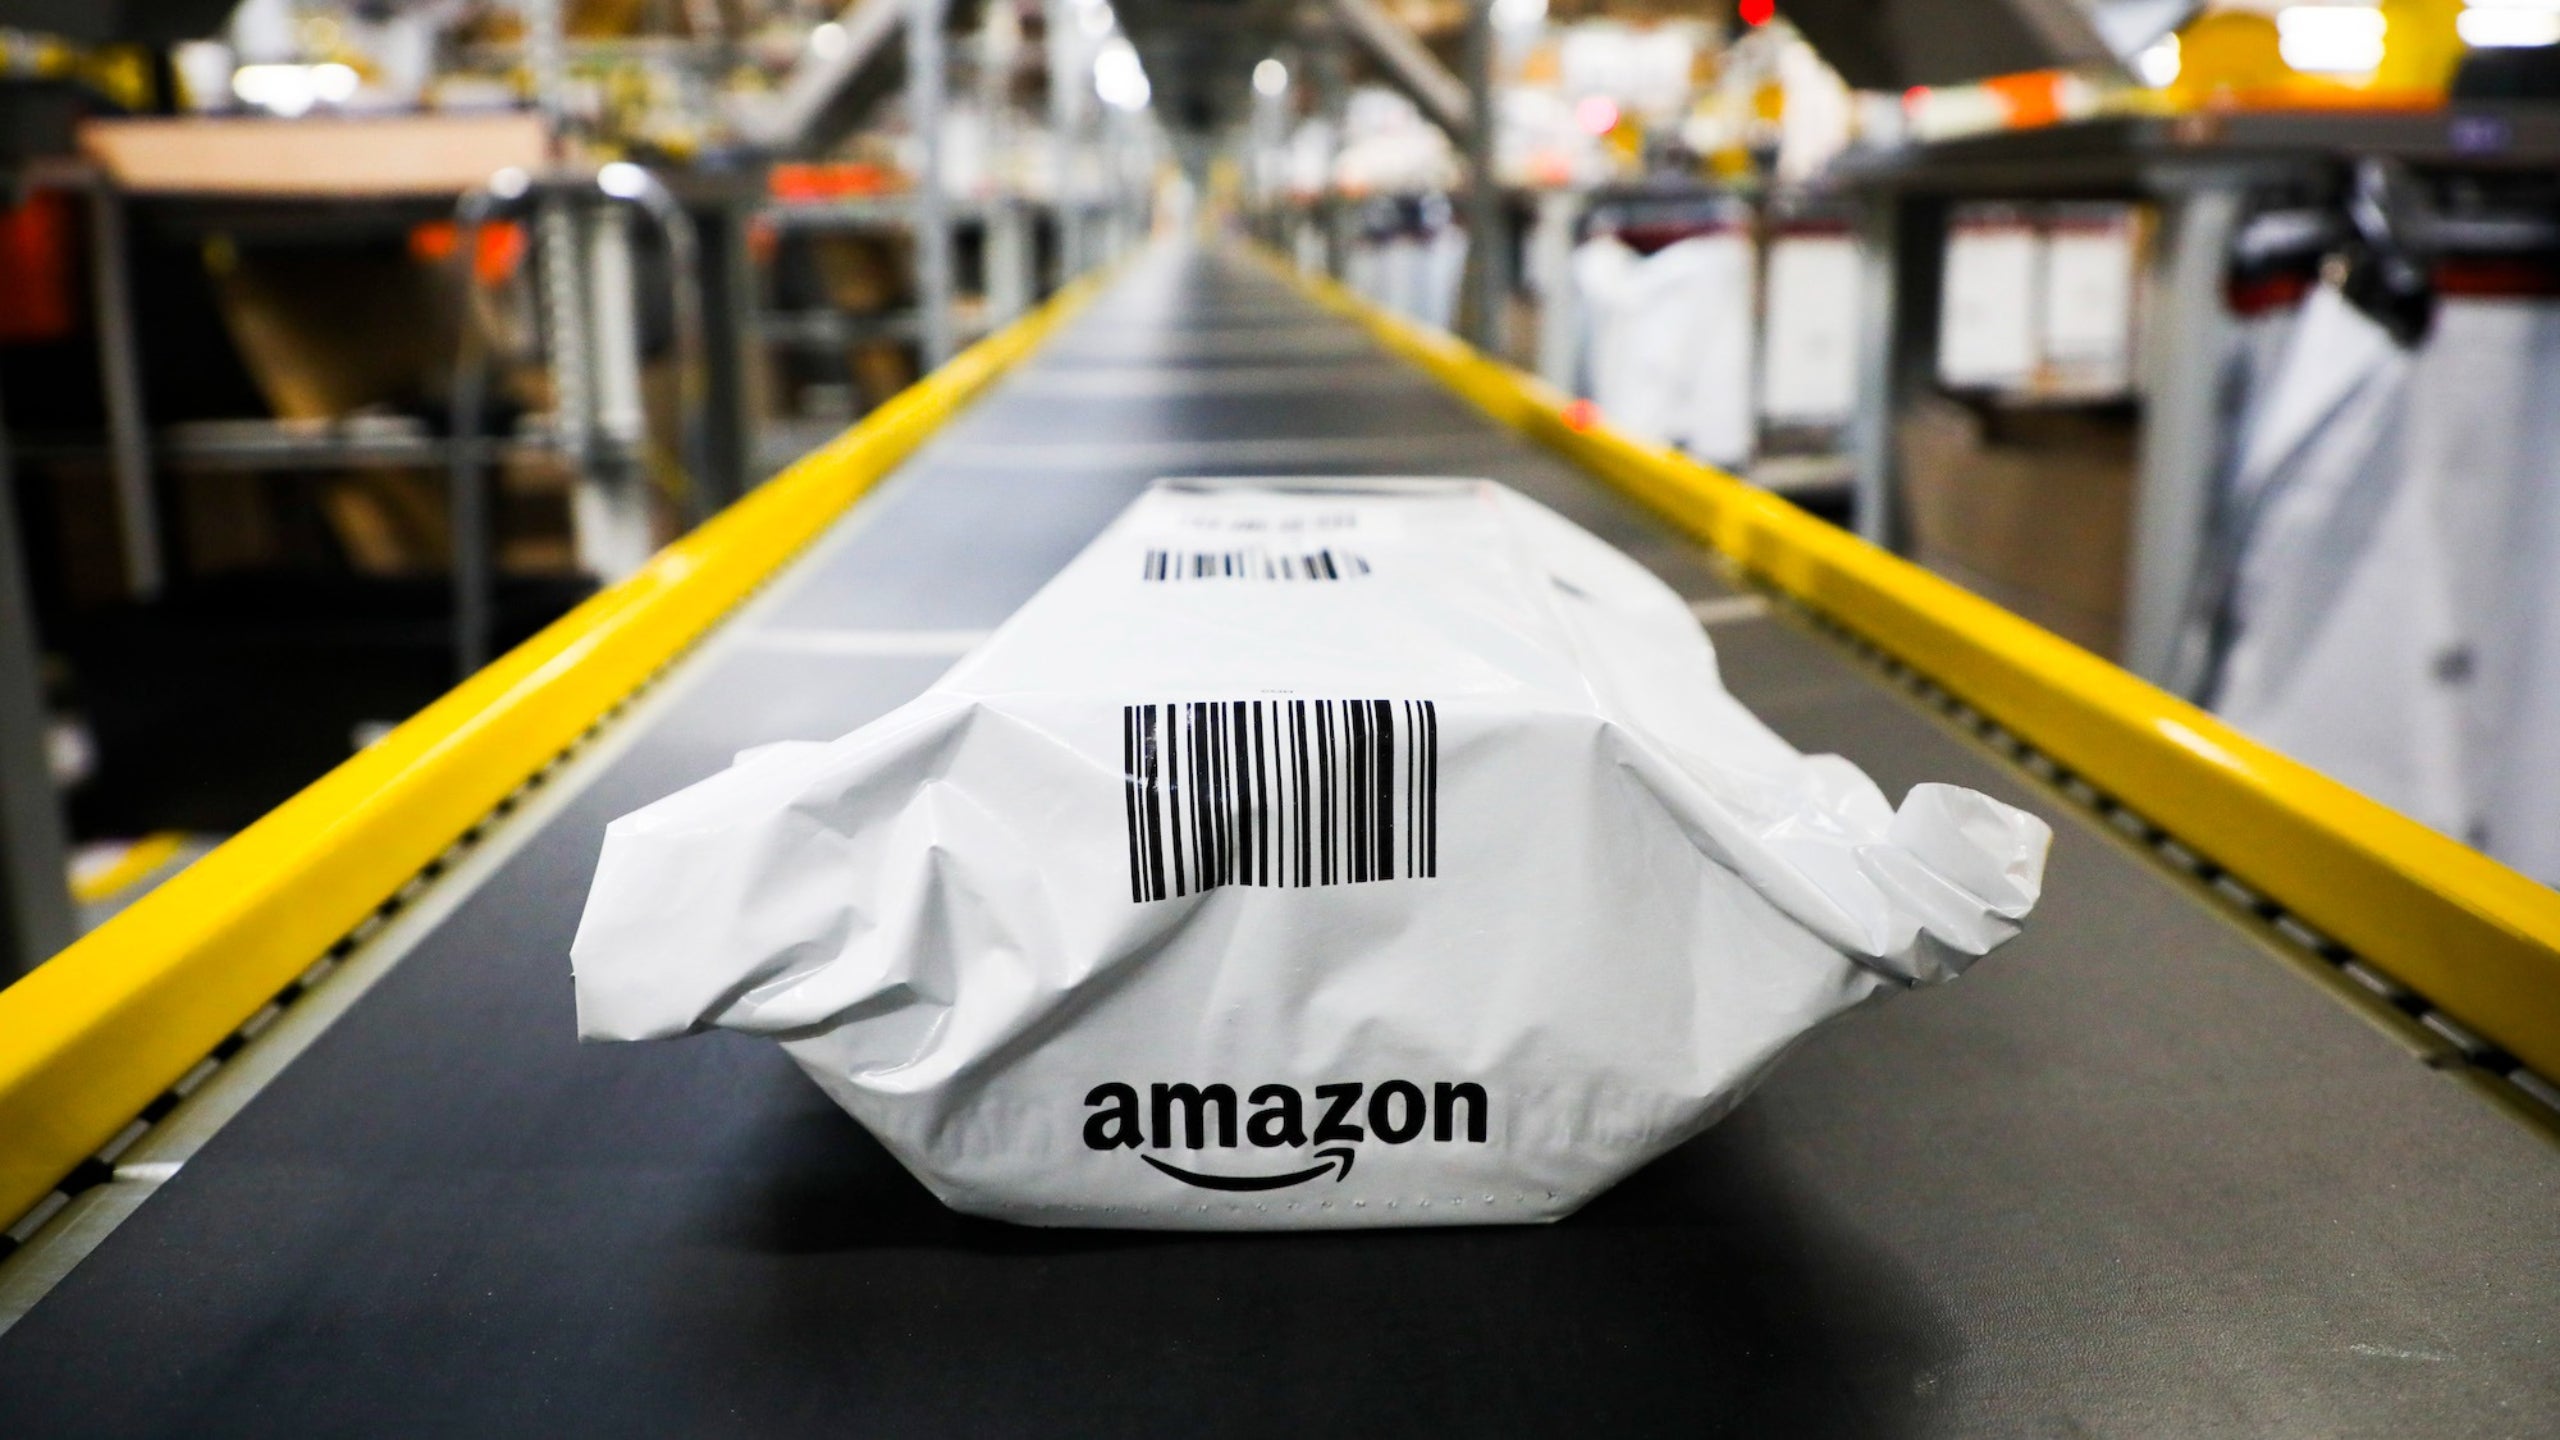 Amazon dice que está reduciendo los desechos plásticos